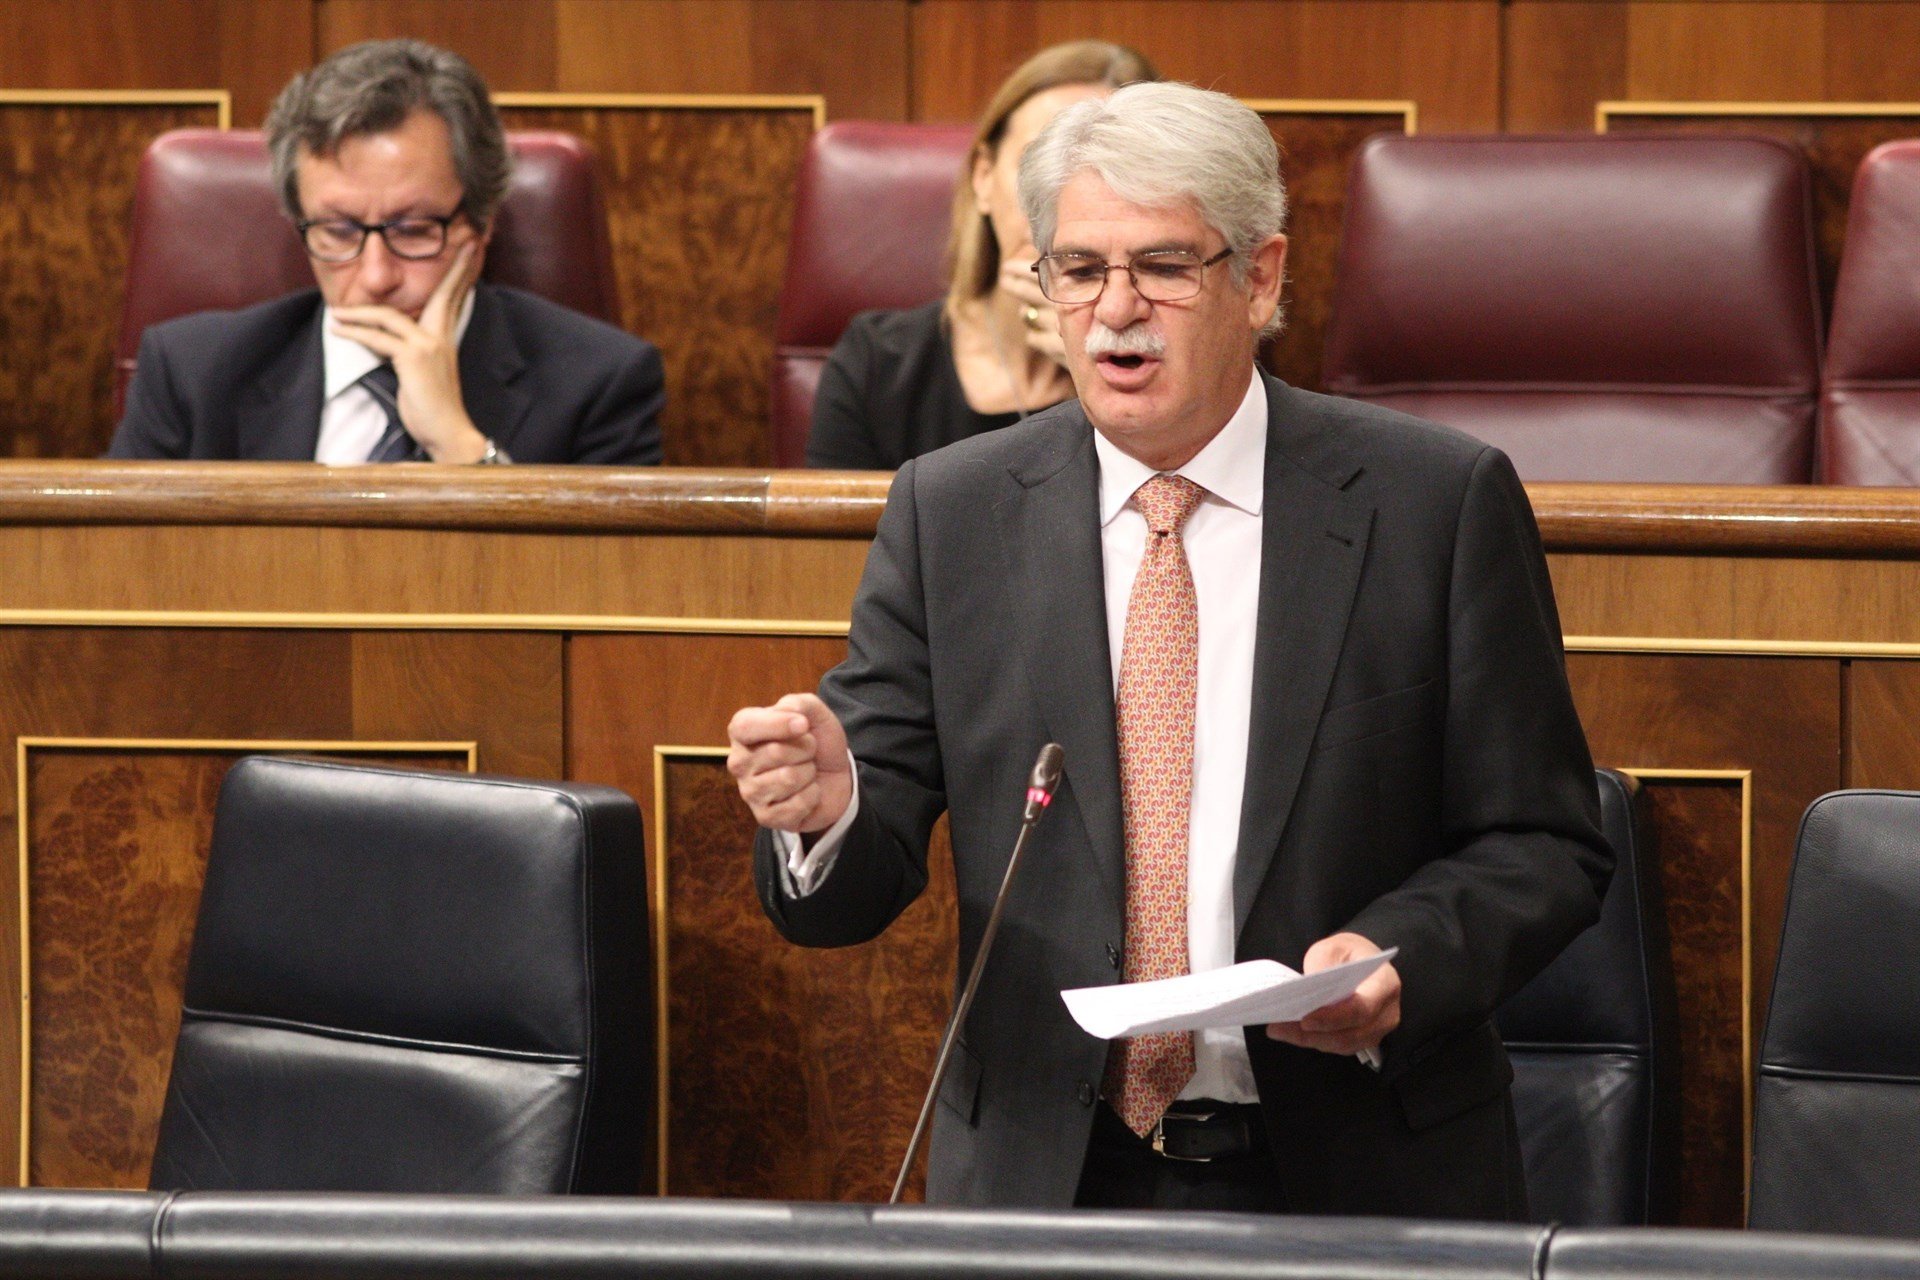 Dastis reconoce que el Gobierno español está "perplejo"